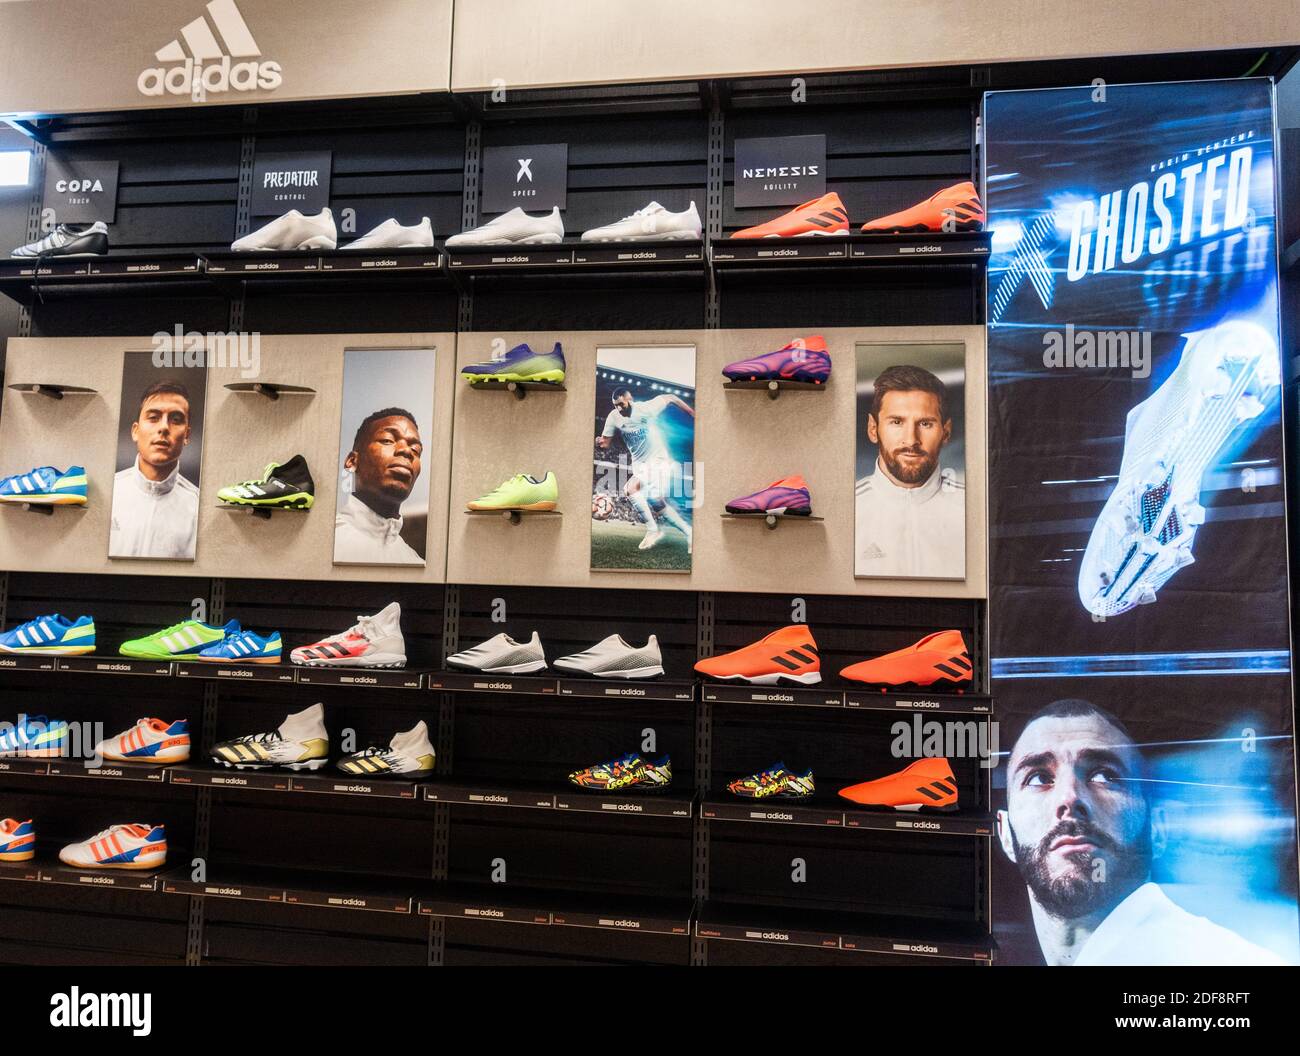 Adidas Fußballschuhe Store Display. Messi, Pogba Stockfotografie - Alamy